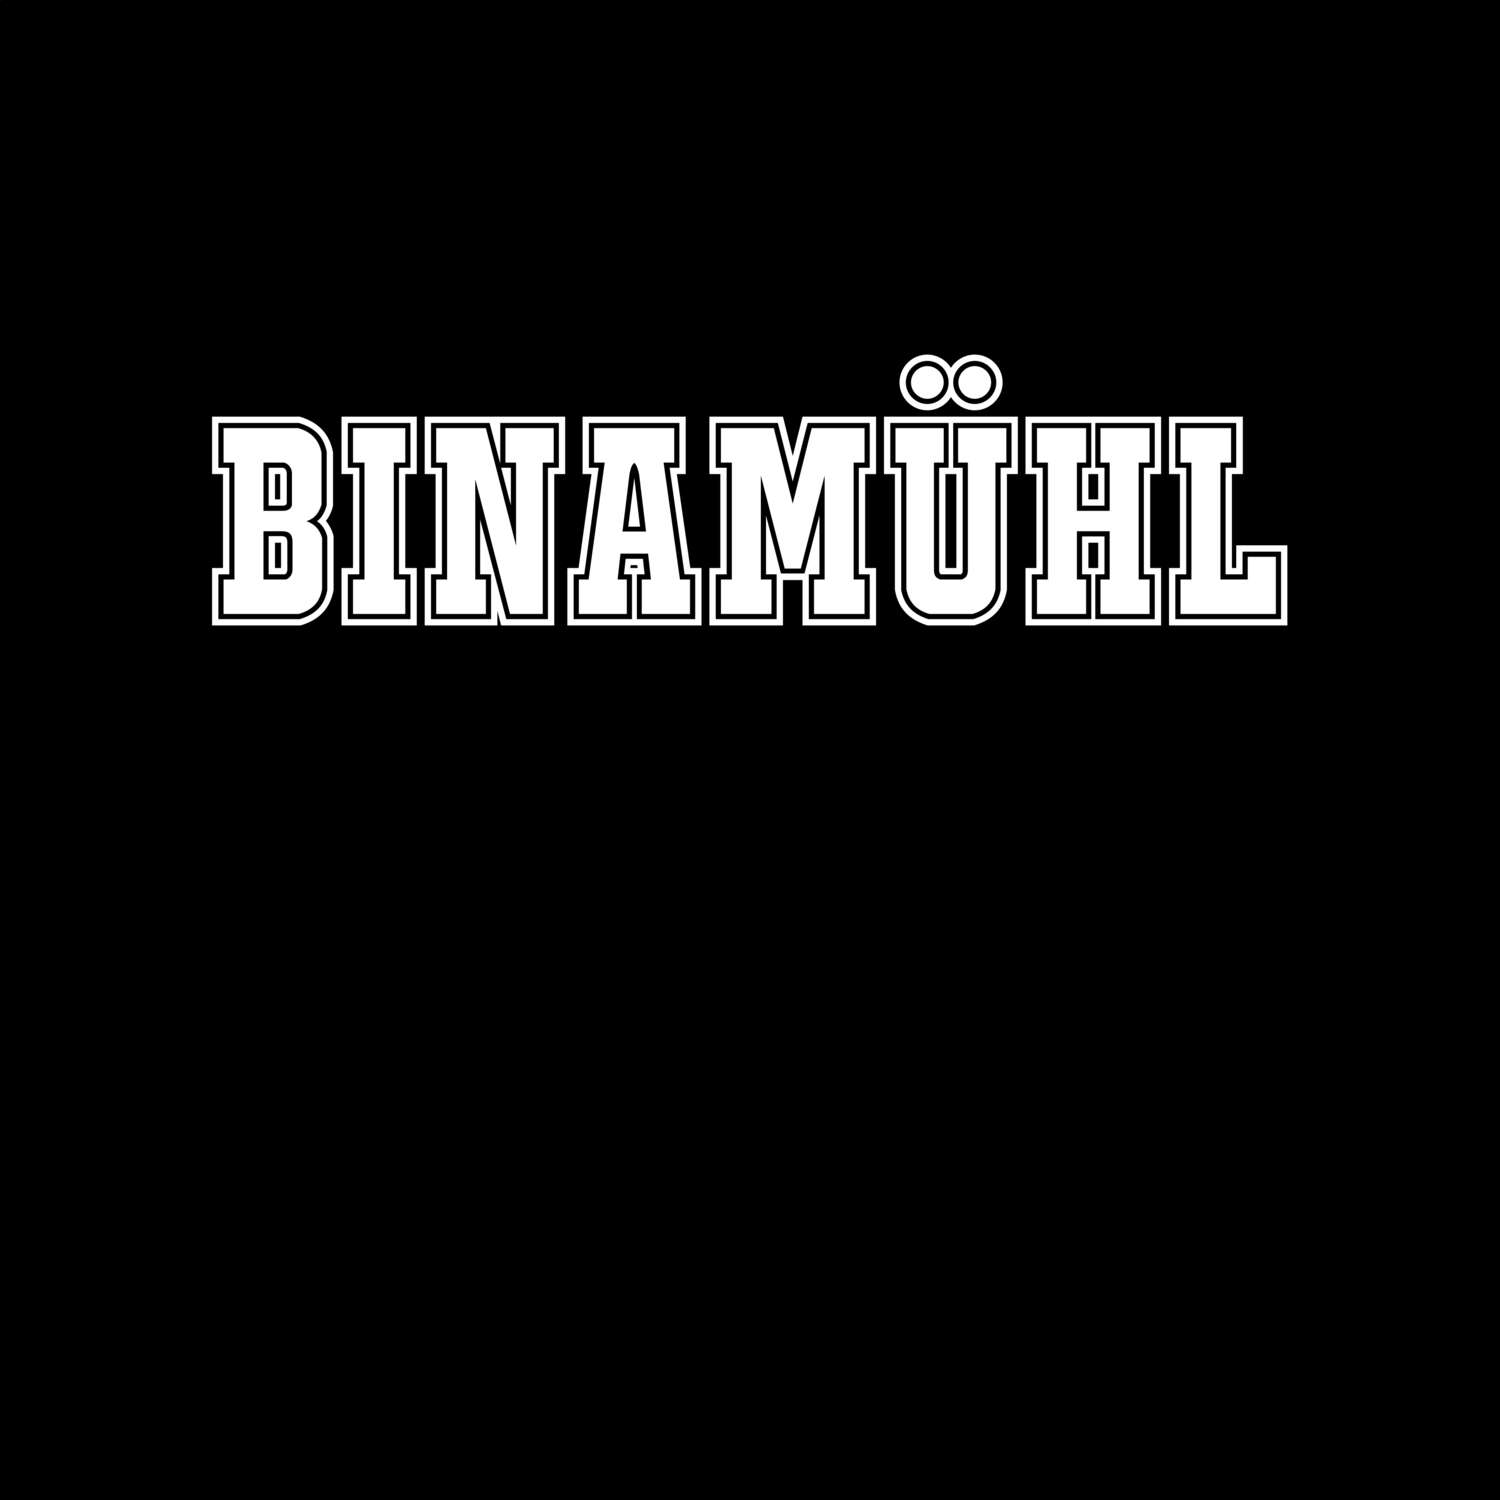 Binamühl T-Shirt »Classic«